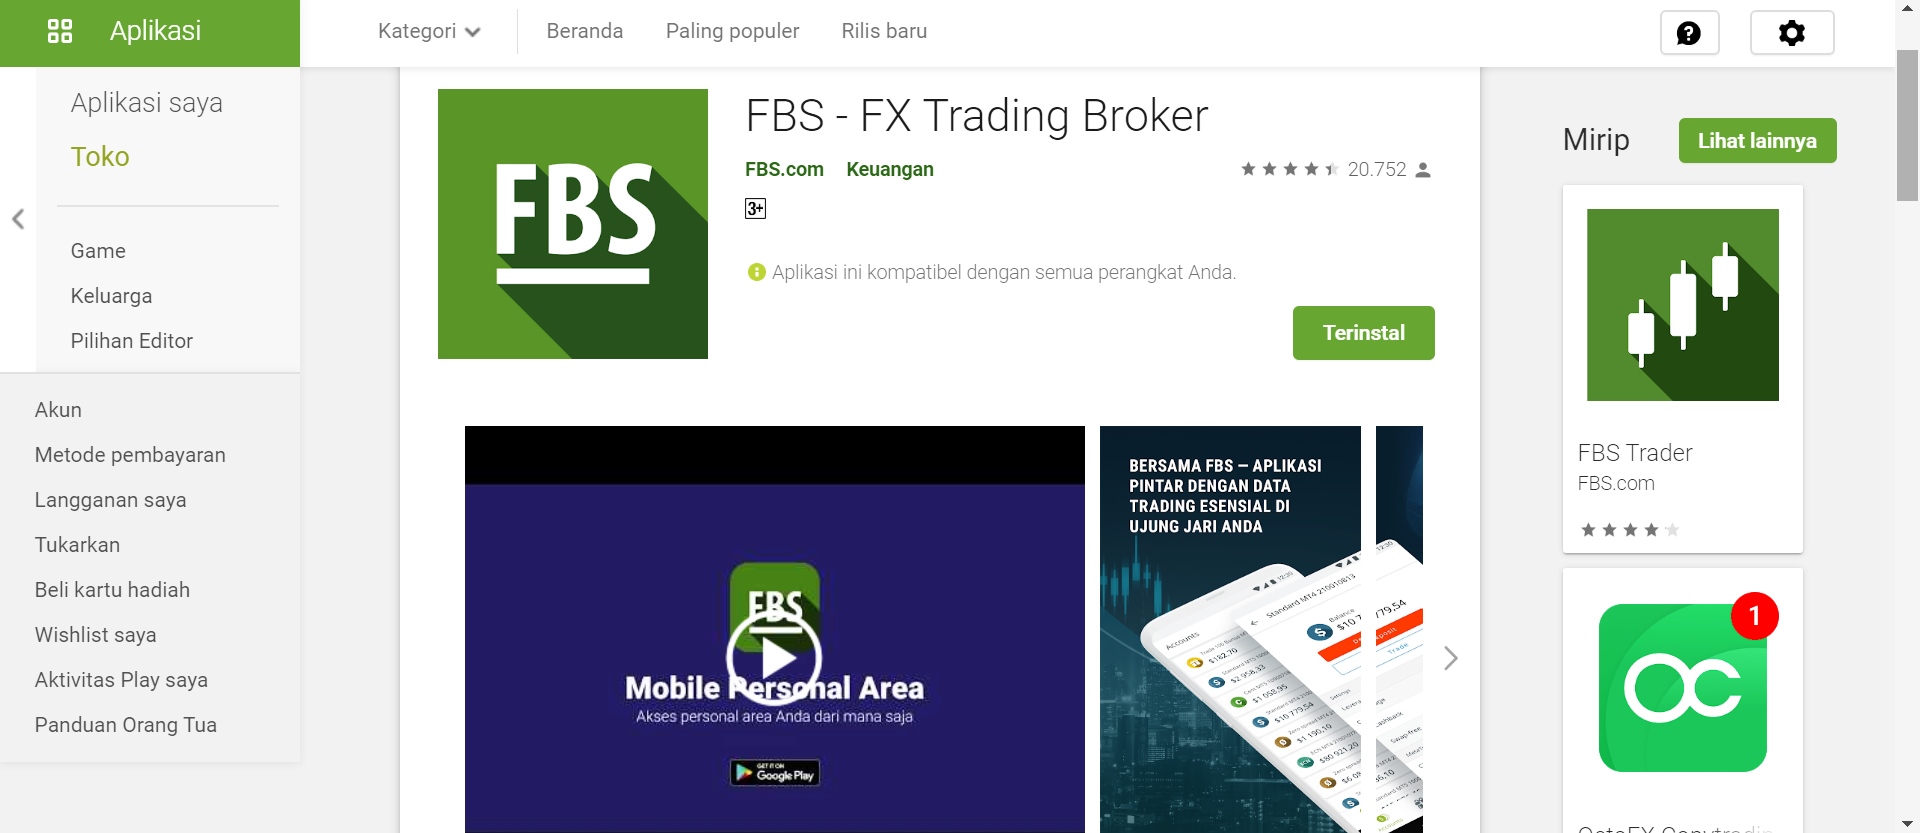 peringkat broker forex terbaik indonesia strategi perdagangan uk